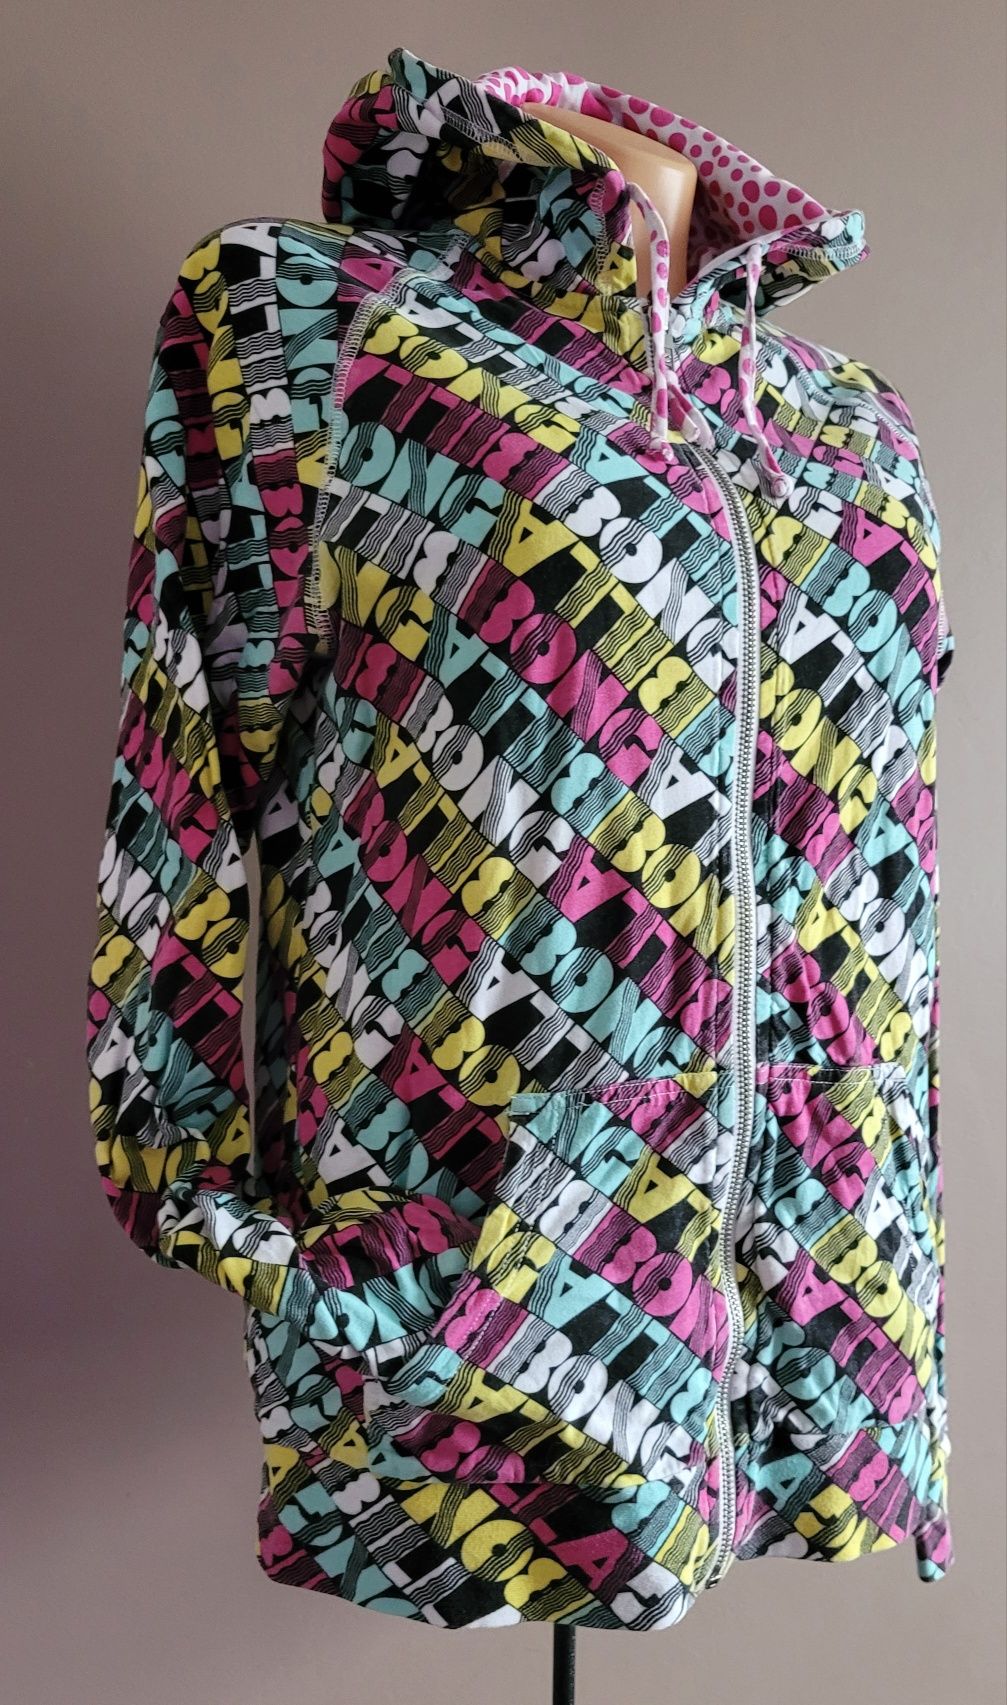 Kolorowa logowana bluza  damska dwustronna  firmy Billabong